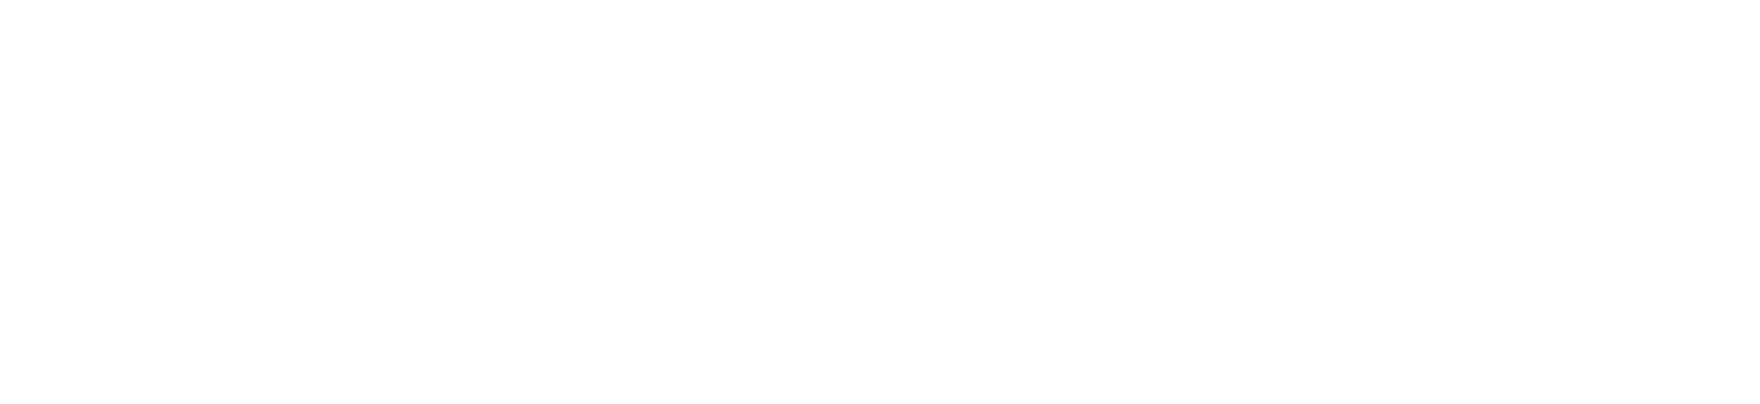 Estudio: EPI, Sector Economia, Klas 2 Edad: 20 a a Hobby: Modela, Moda y Gym 